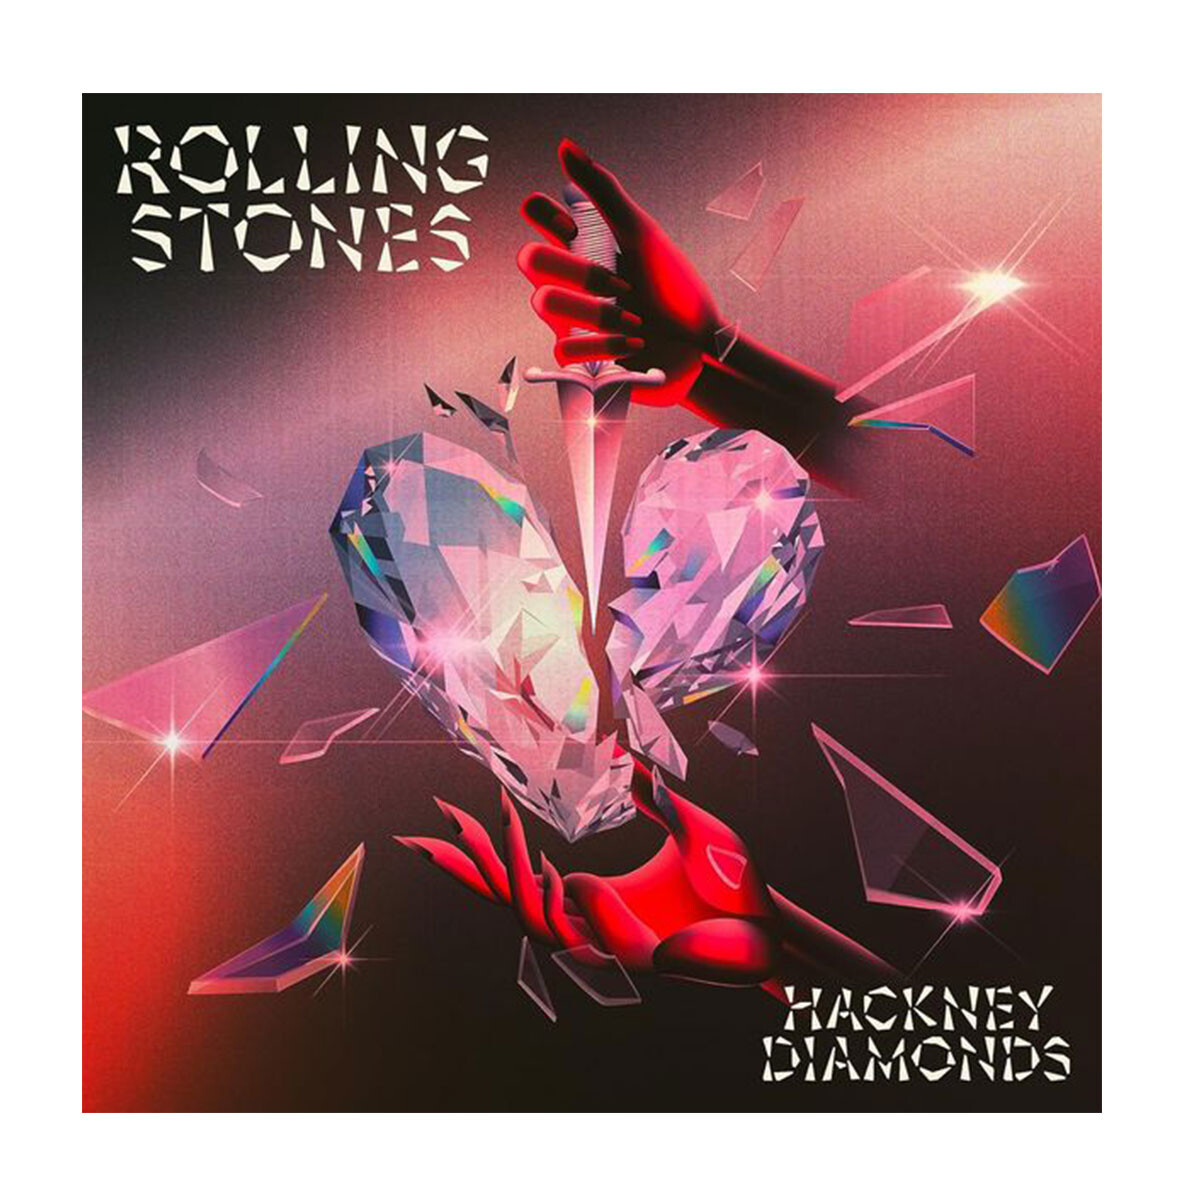 Rolling Stones / Hackney Diamonds - Cd 